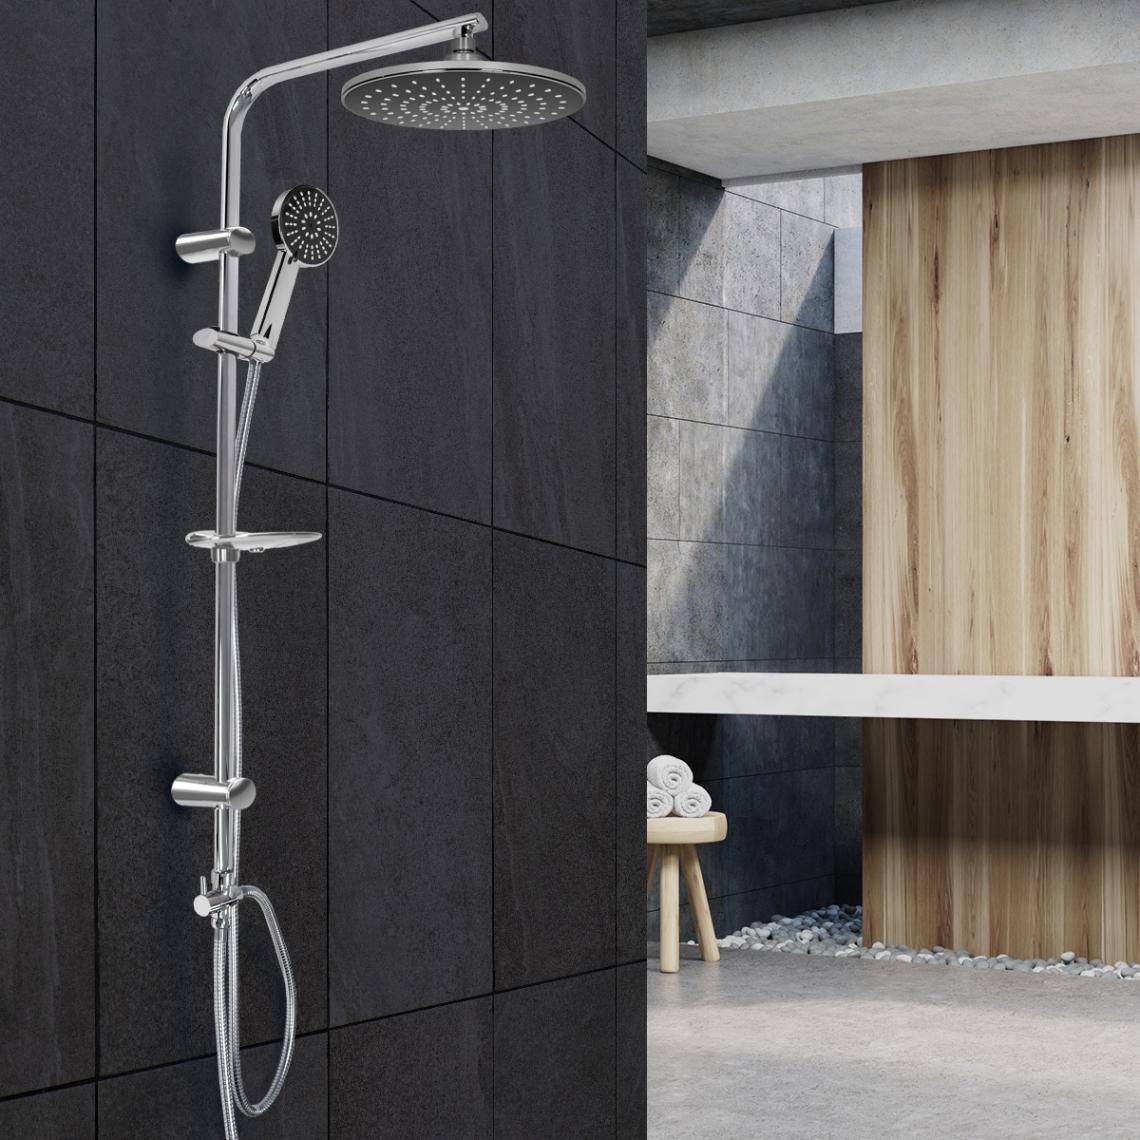 Ecd Germany - Système douche chromé acier inoxydable salle bain rond noir + matériels montage - Colonne de douche